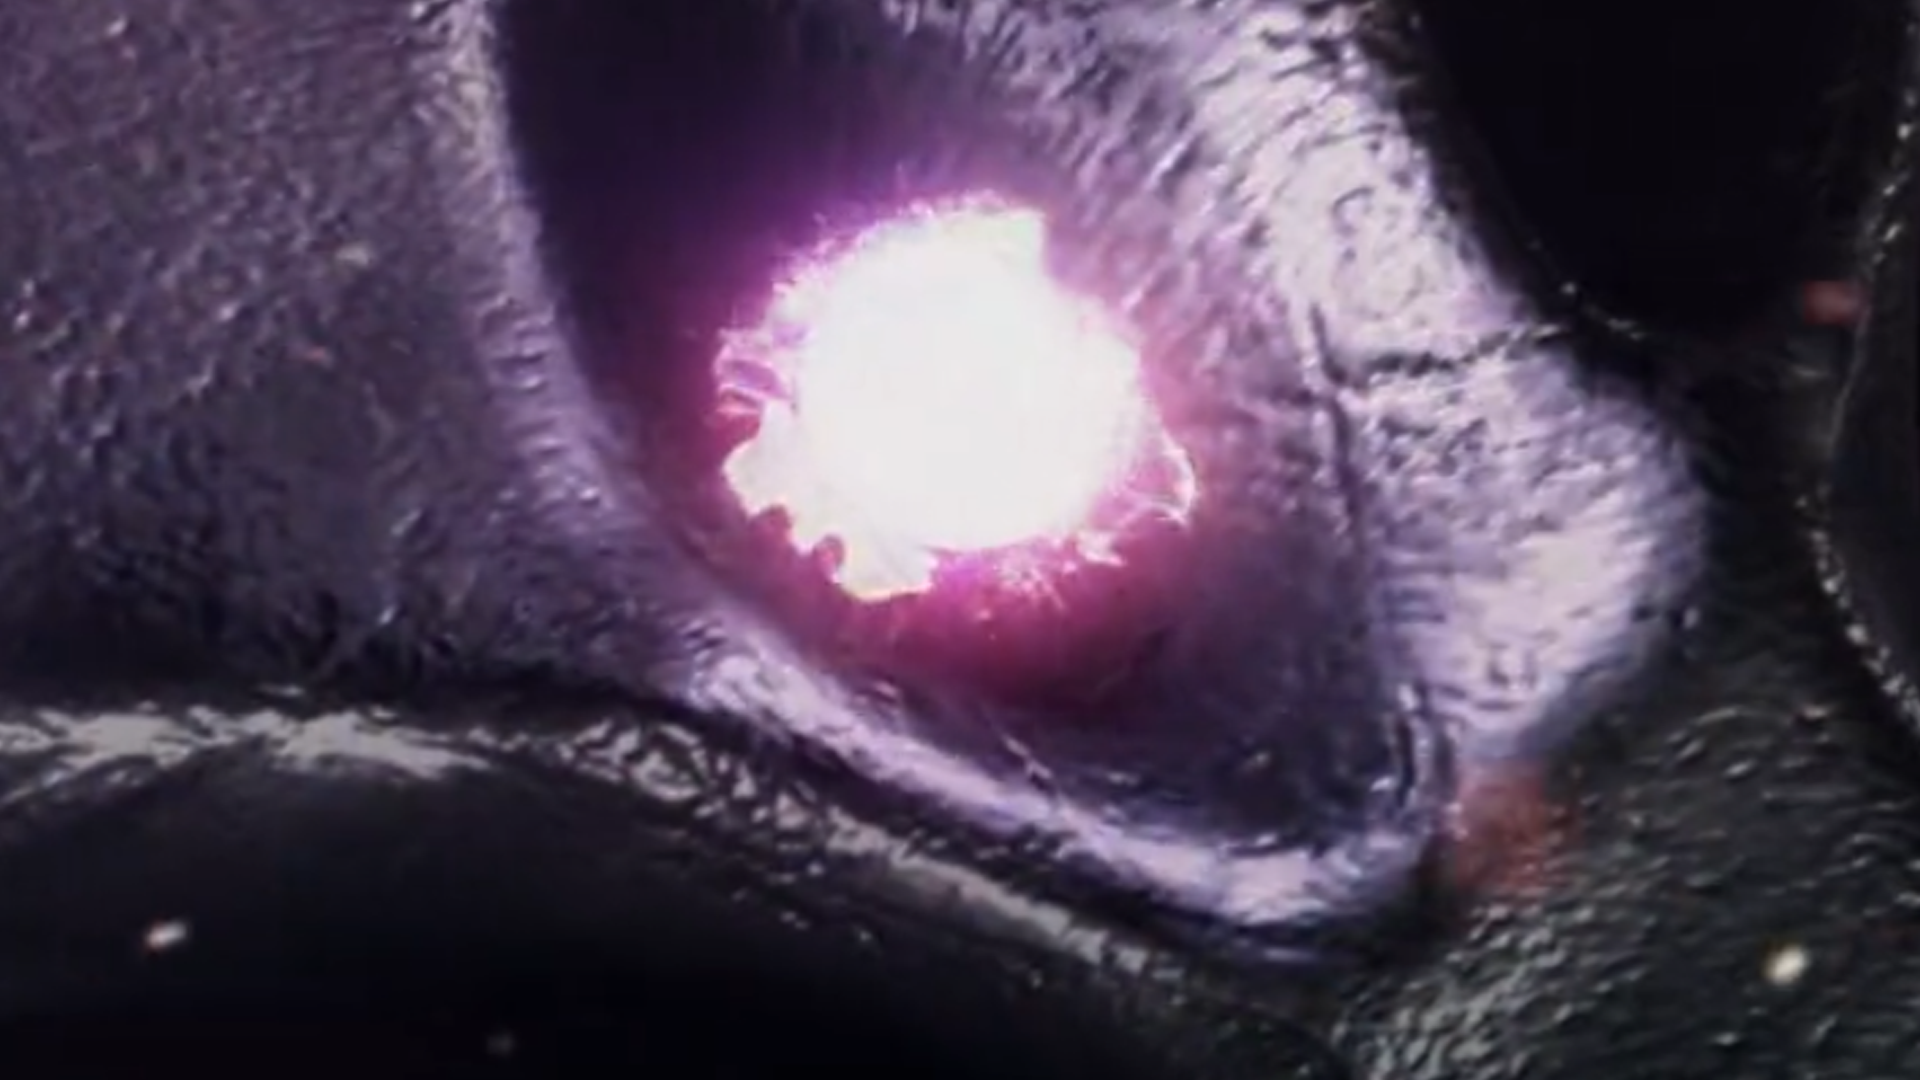 D&D movie trailer image